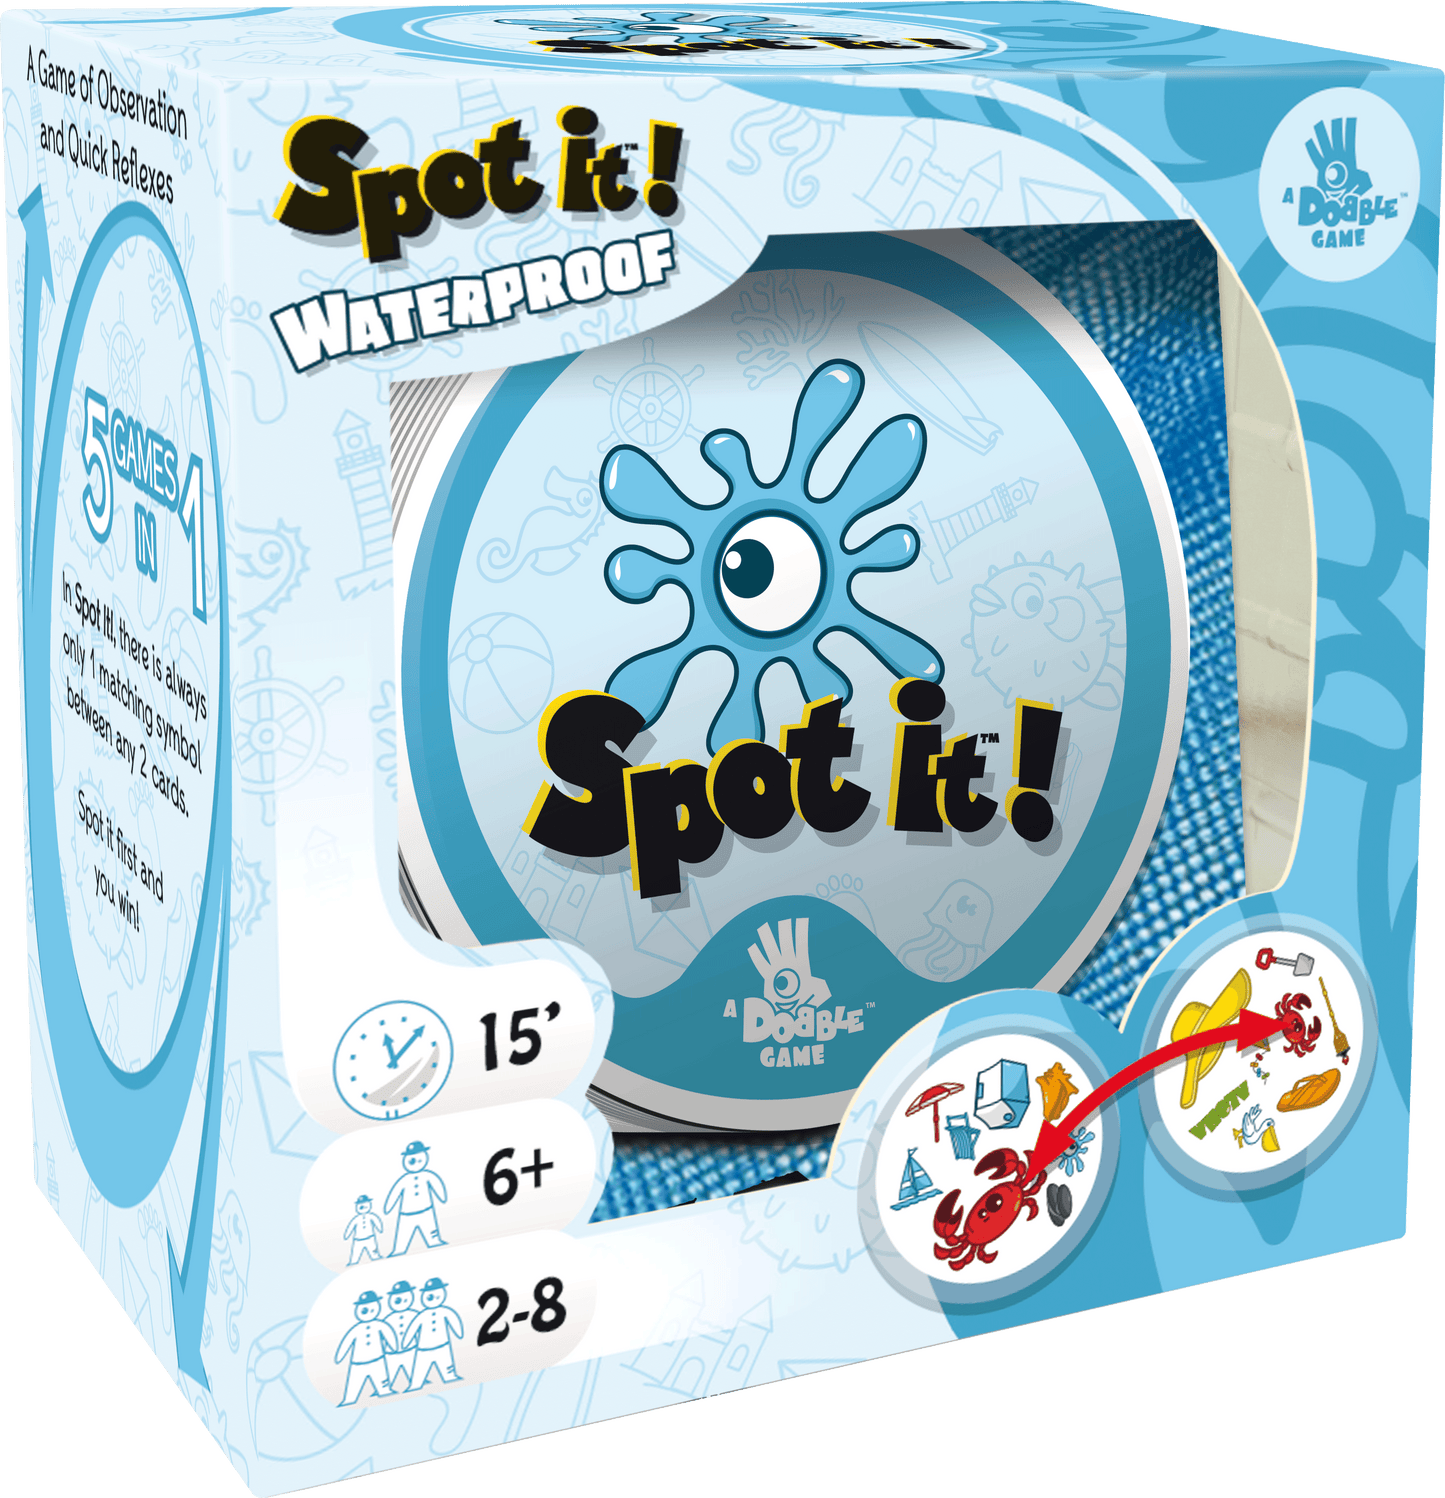 Spot it! Waterproof (Box)